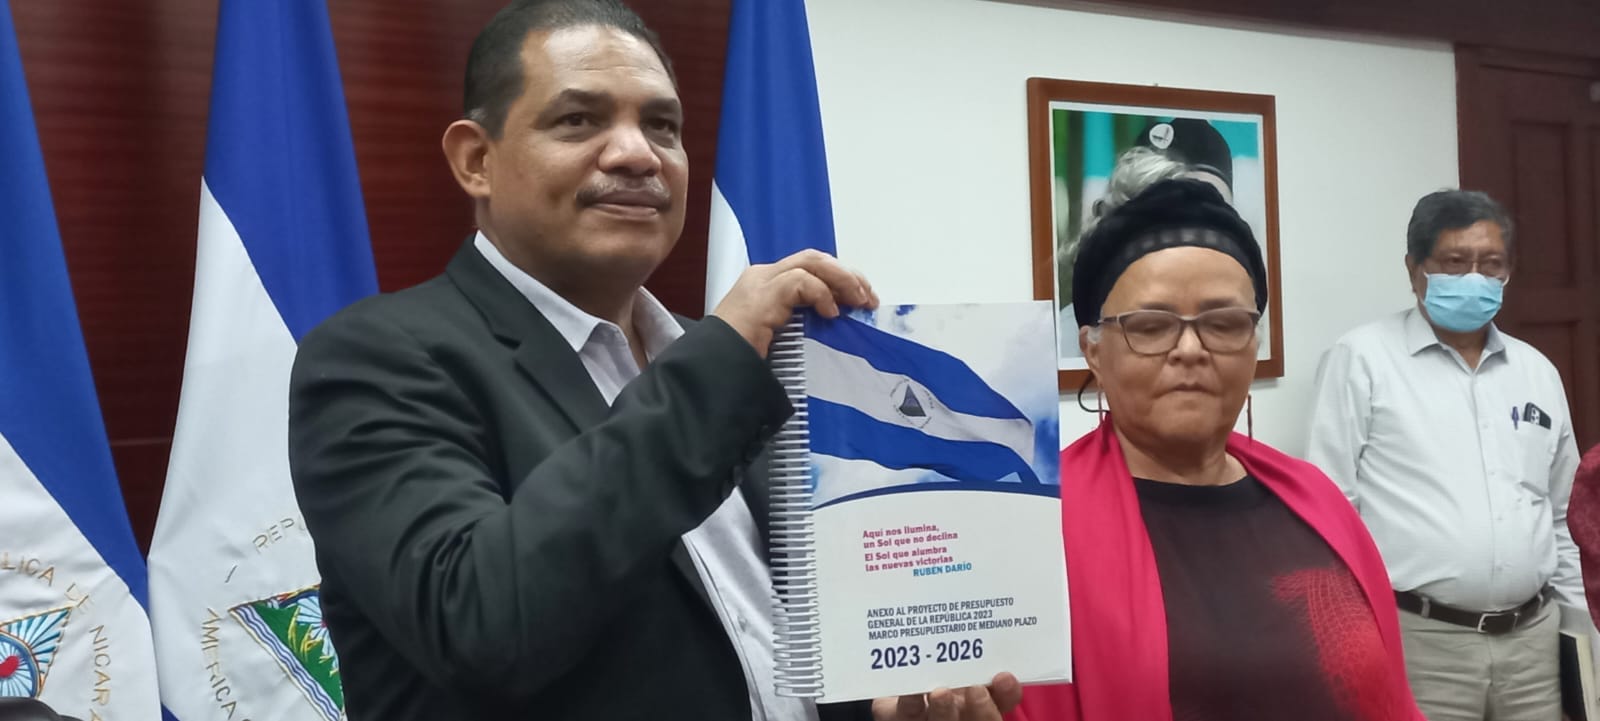 Presupuesto 2023 prioriza inversión social y lucha contra pobreza Managua. Danielka Ruiz, Radio La Primerísima